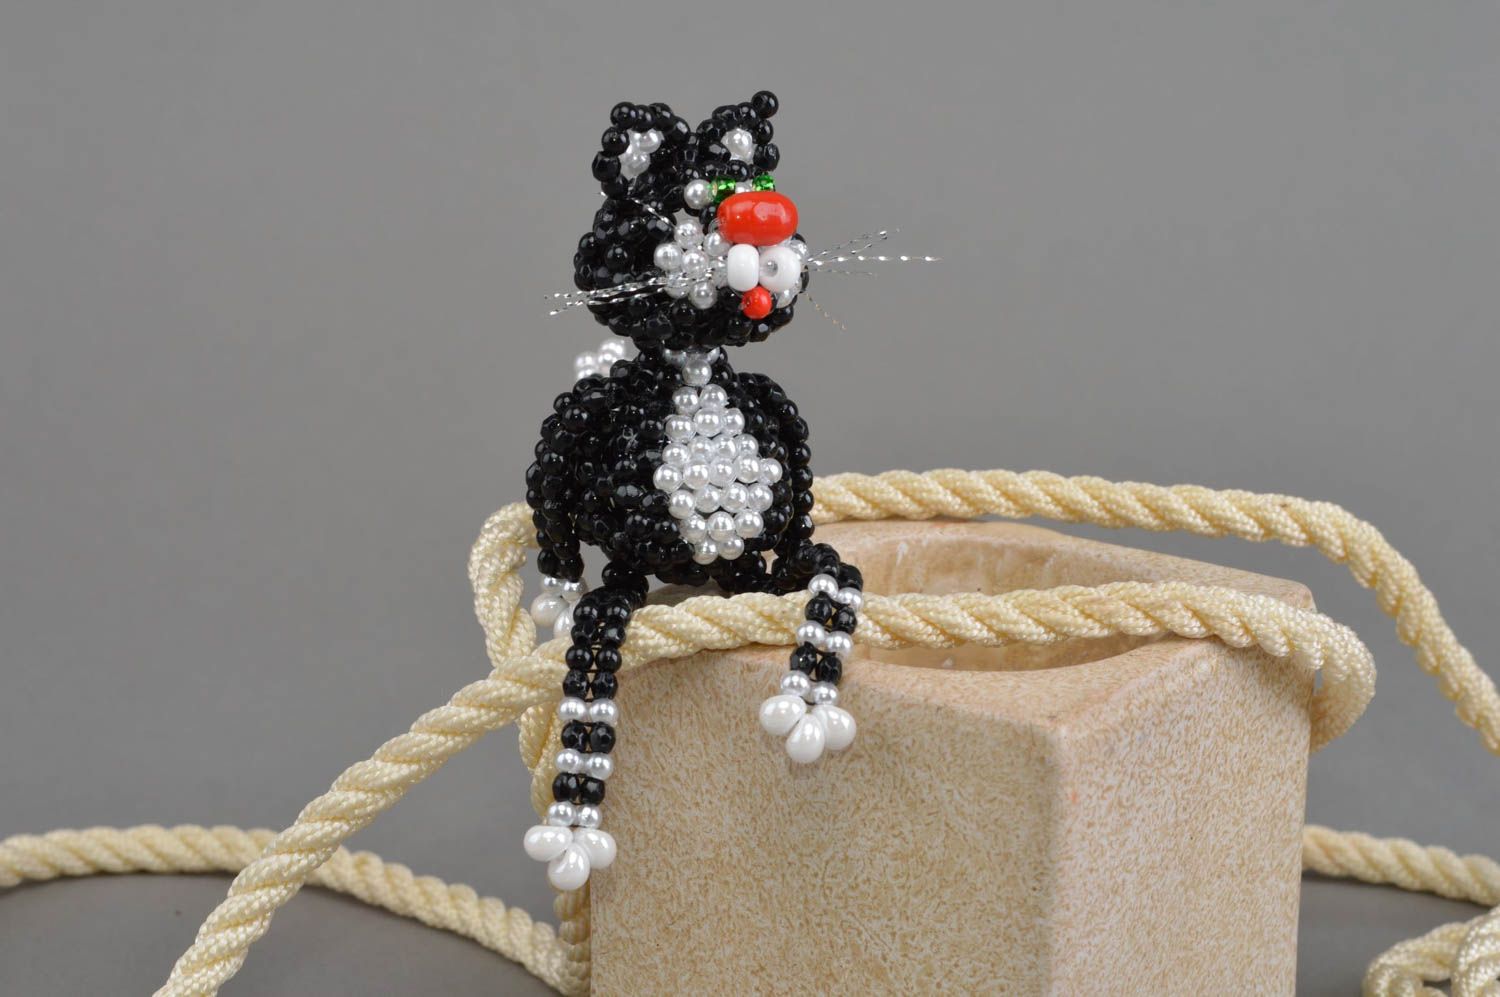 Фигурка кота из бисера с технике плетения для коллекции и декора хэнд мэйд фото 1